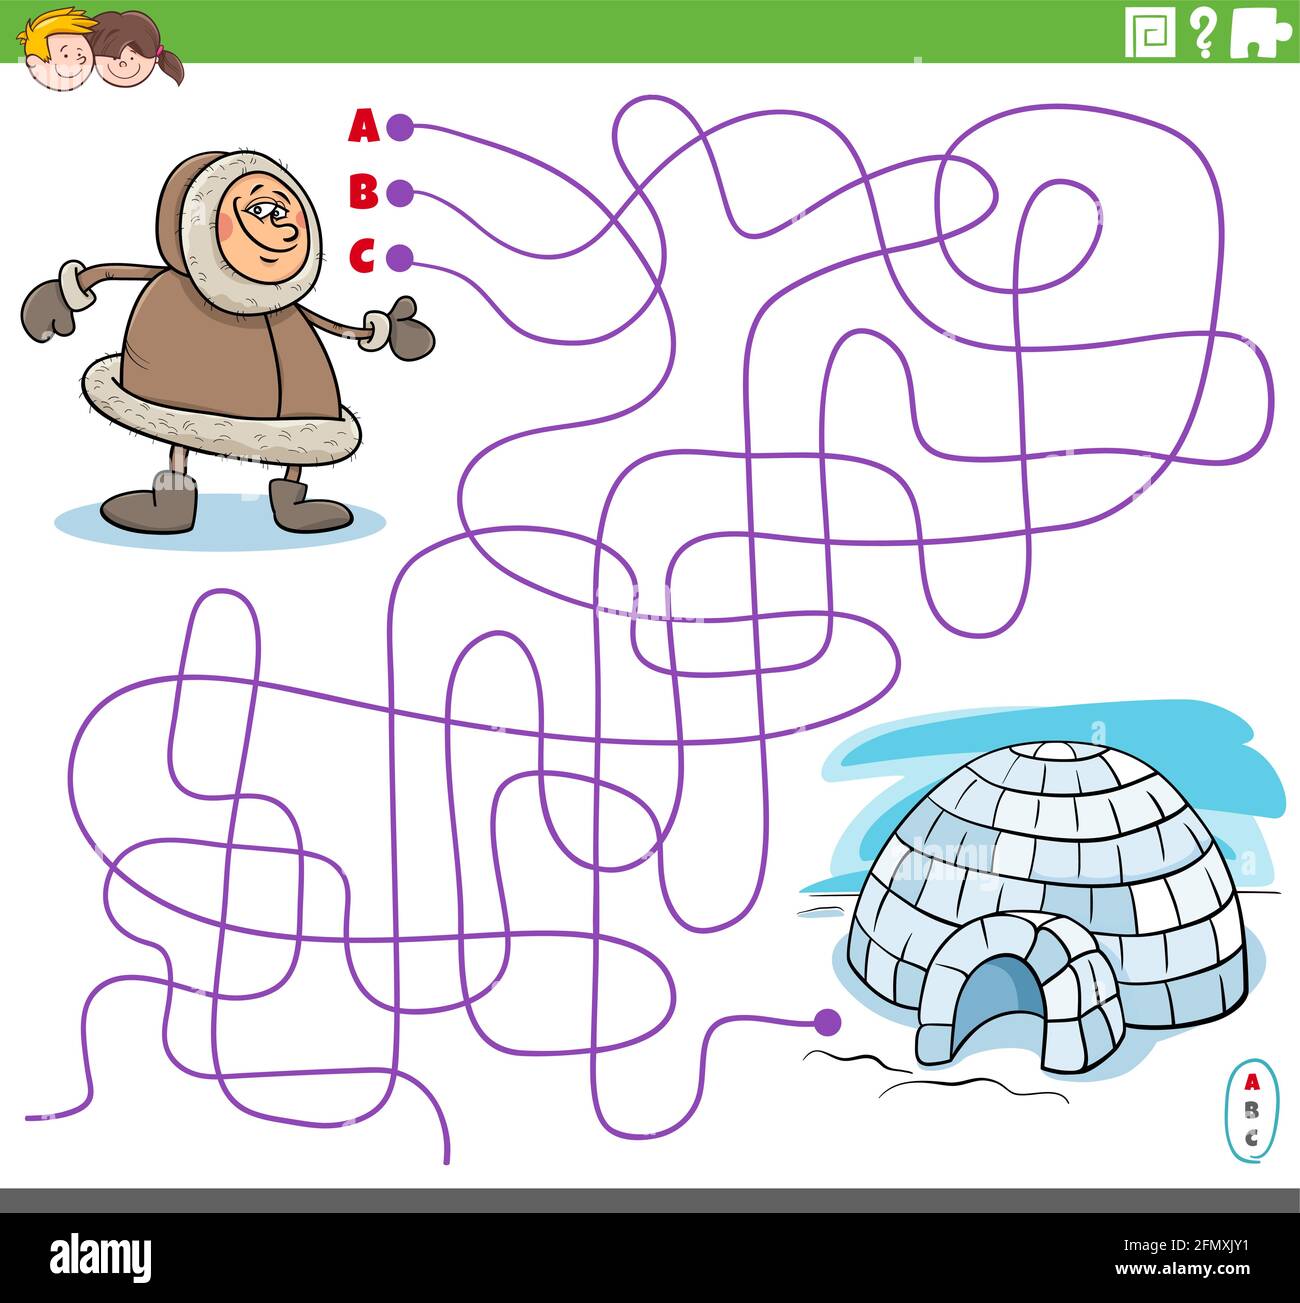 Dessin animé illustration de lignes labyrinthe jeu de puzzle avec le personnage Eskimo et igloo Illustration de Vecteur